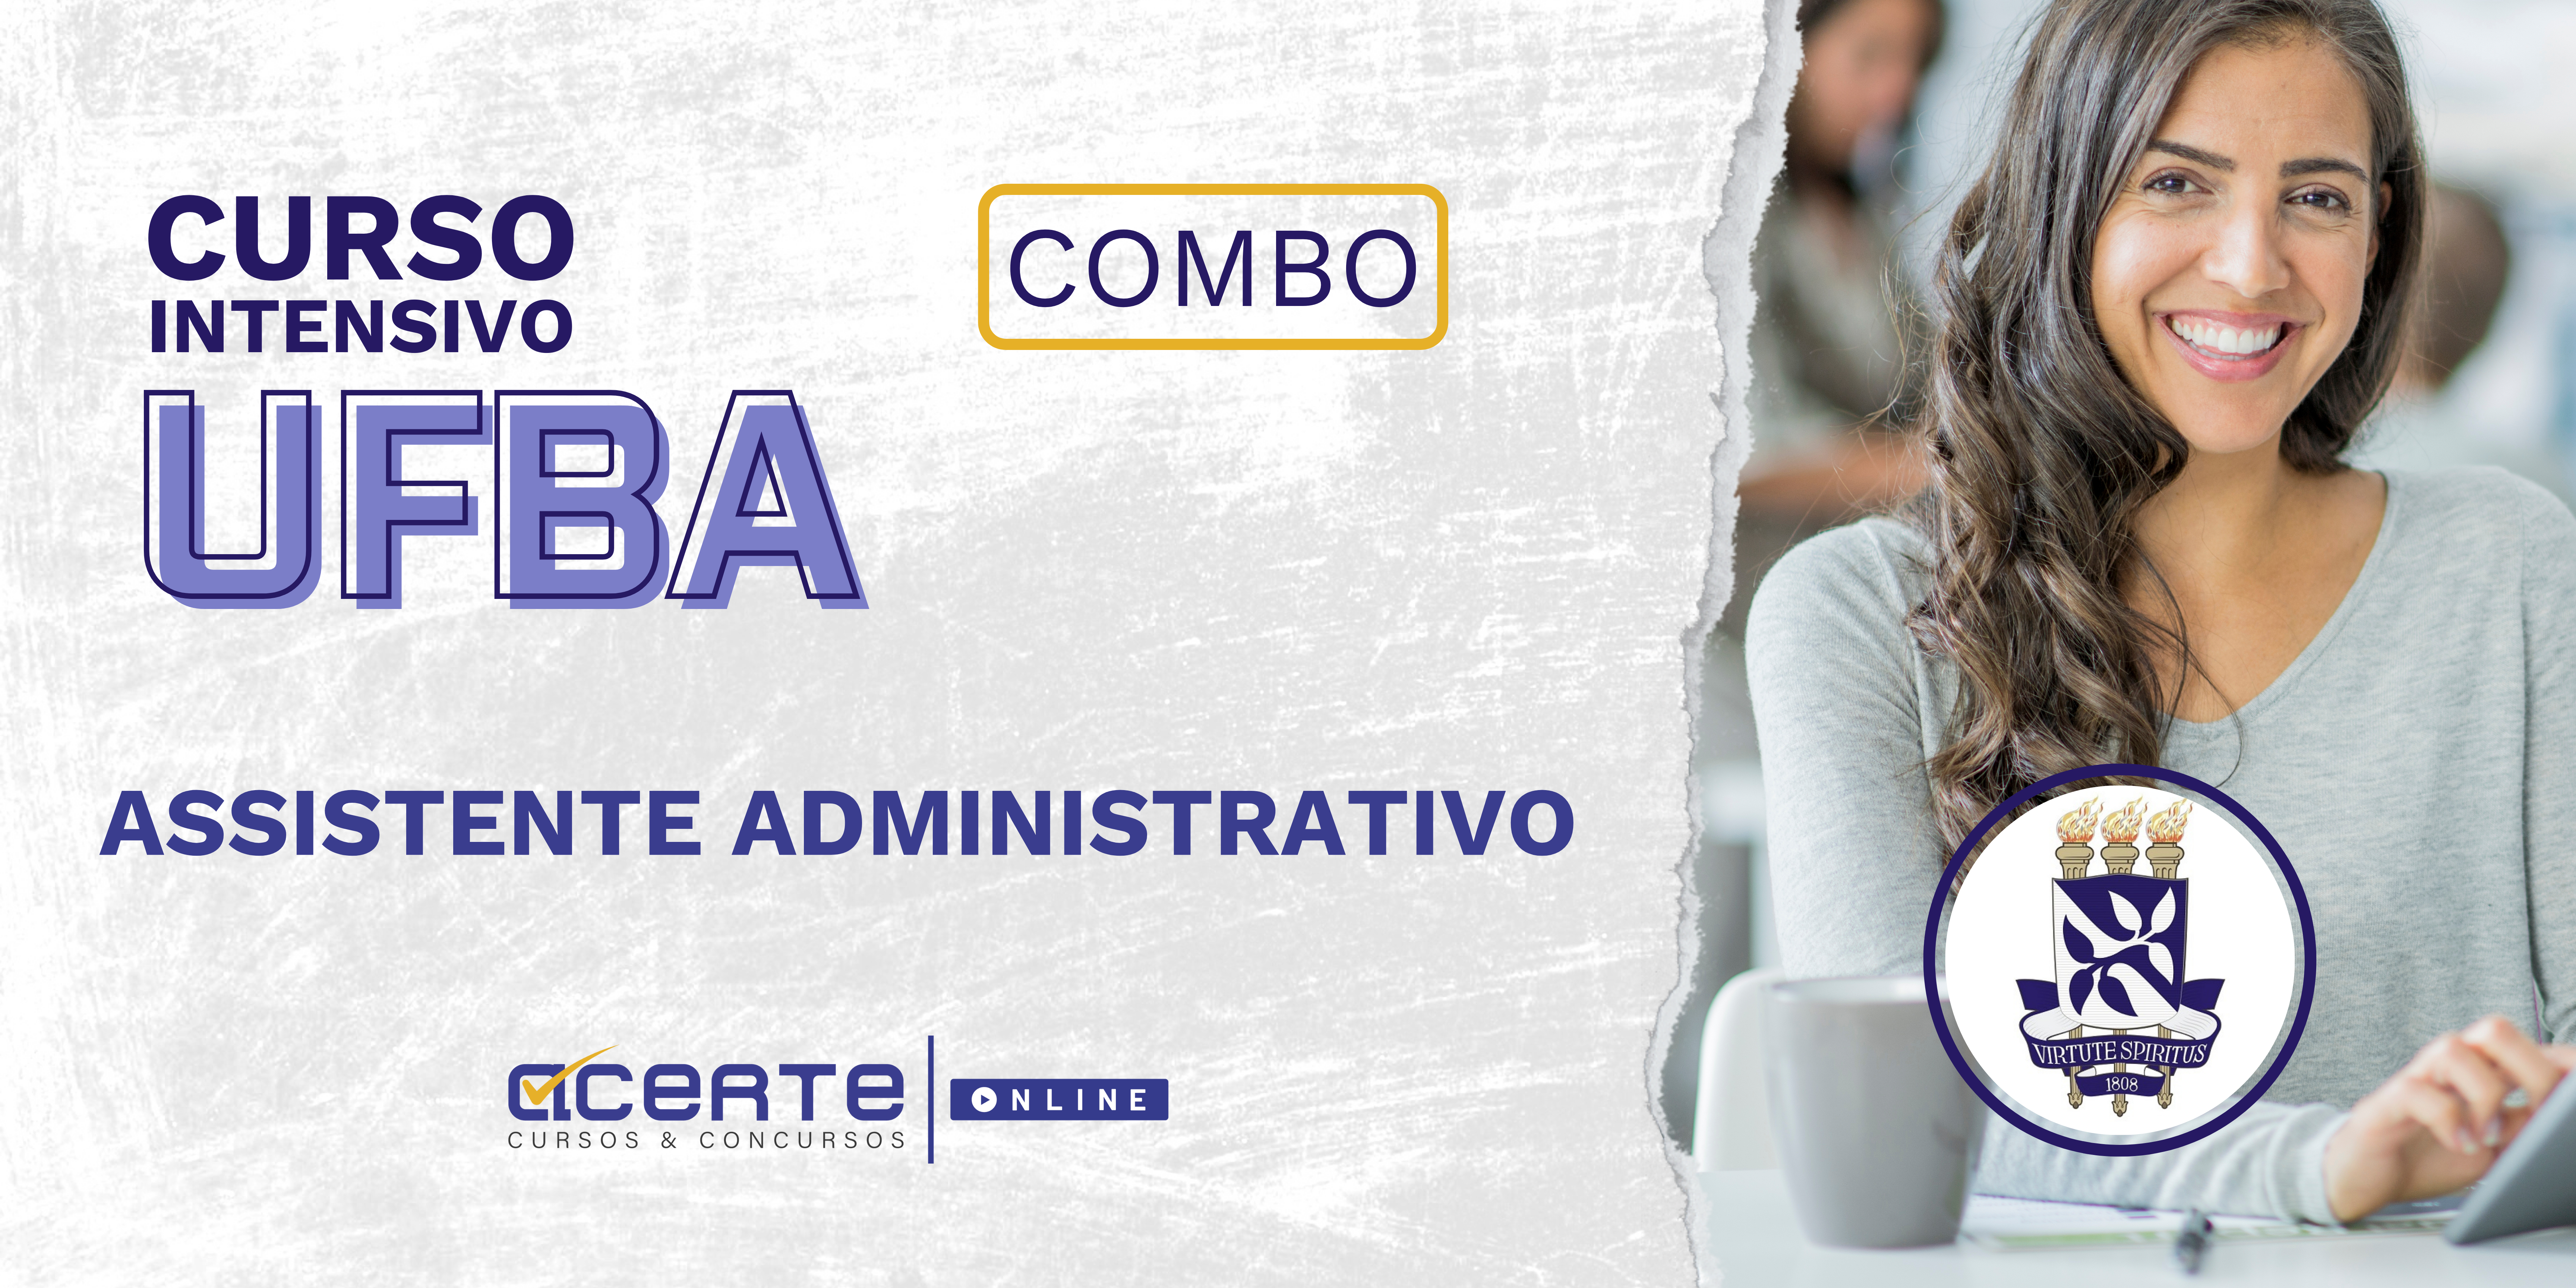 UFBA COMBO - Assistente em Administração - Edital Publicado - ONLINE